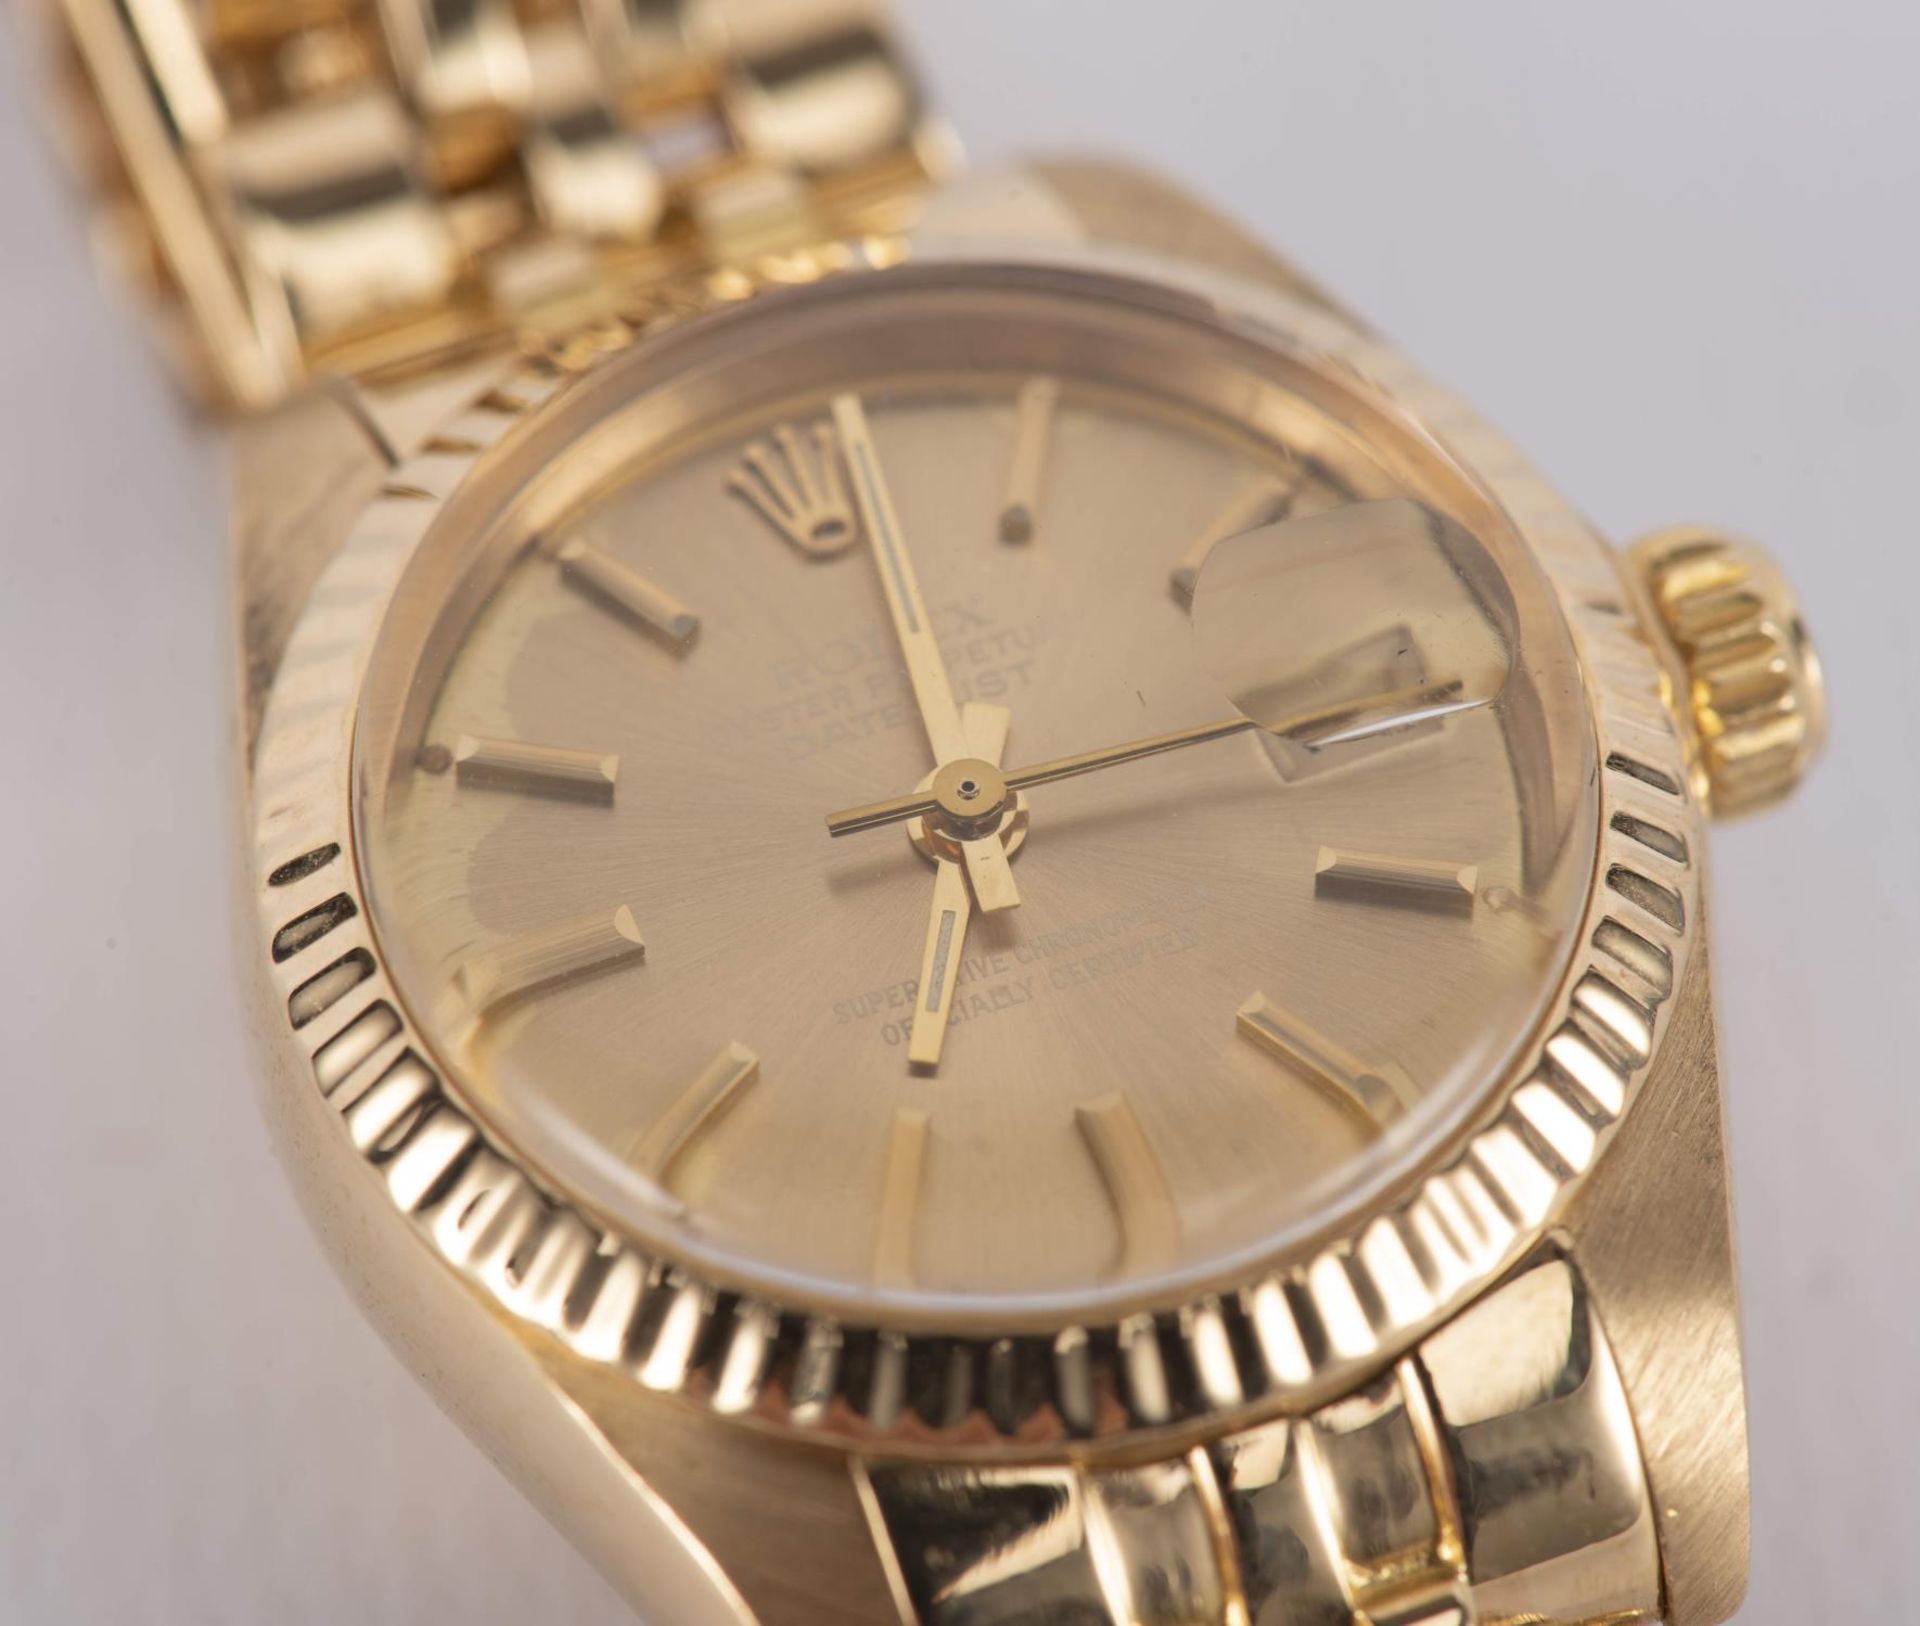 Rolex Oyster Perpetual Lady Datejust automatic, montre-bracelet de dame avec bracelet [...] - Image 2 of 4